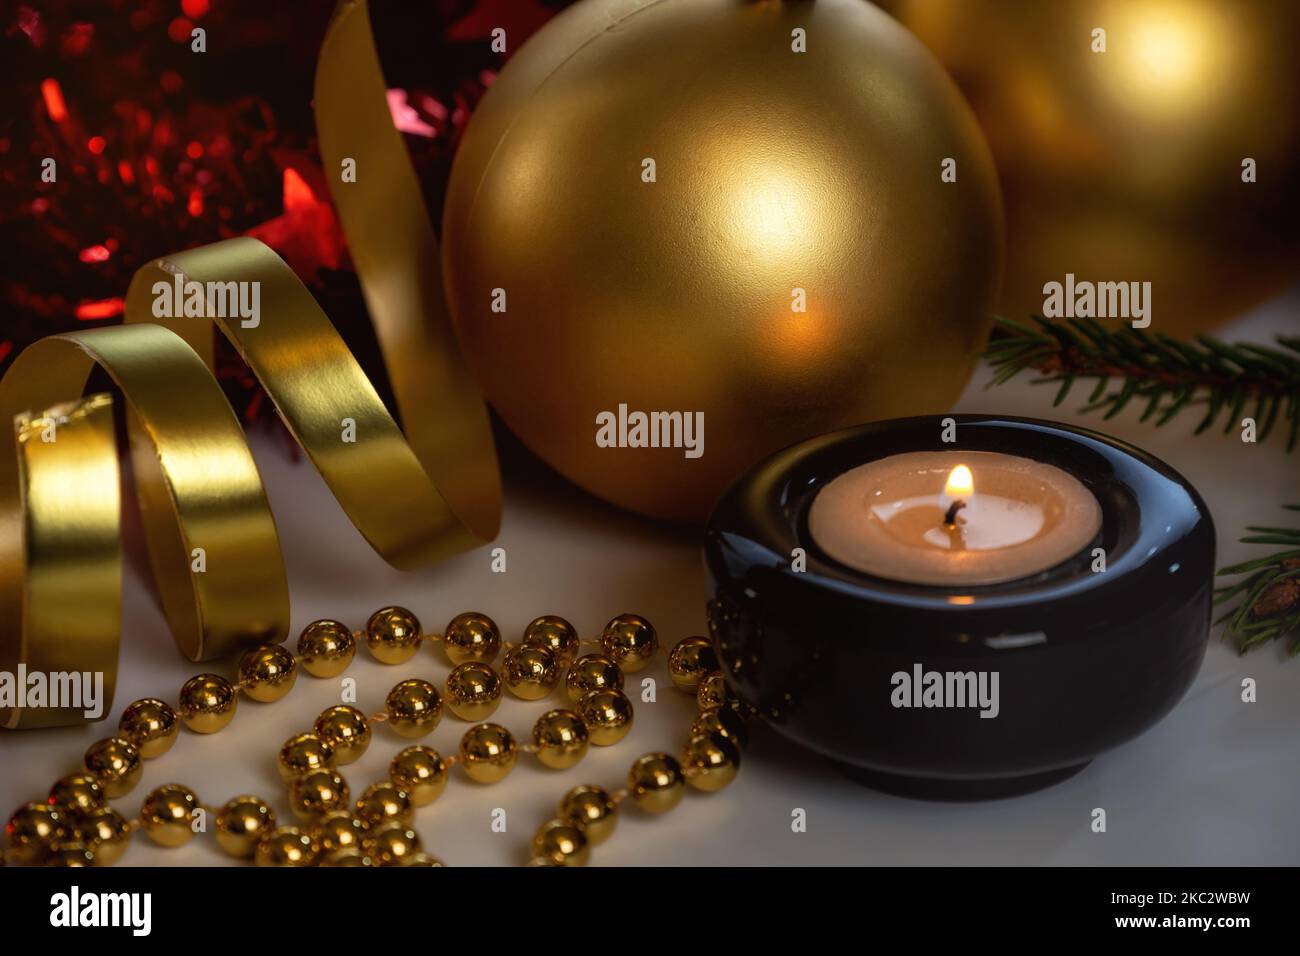 Bougie allumée dans un chandelier et décorations de Noël. Décoration de Noël, fond festif Banque D'Images